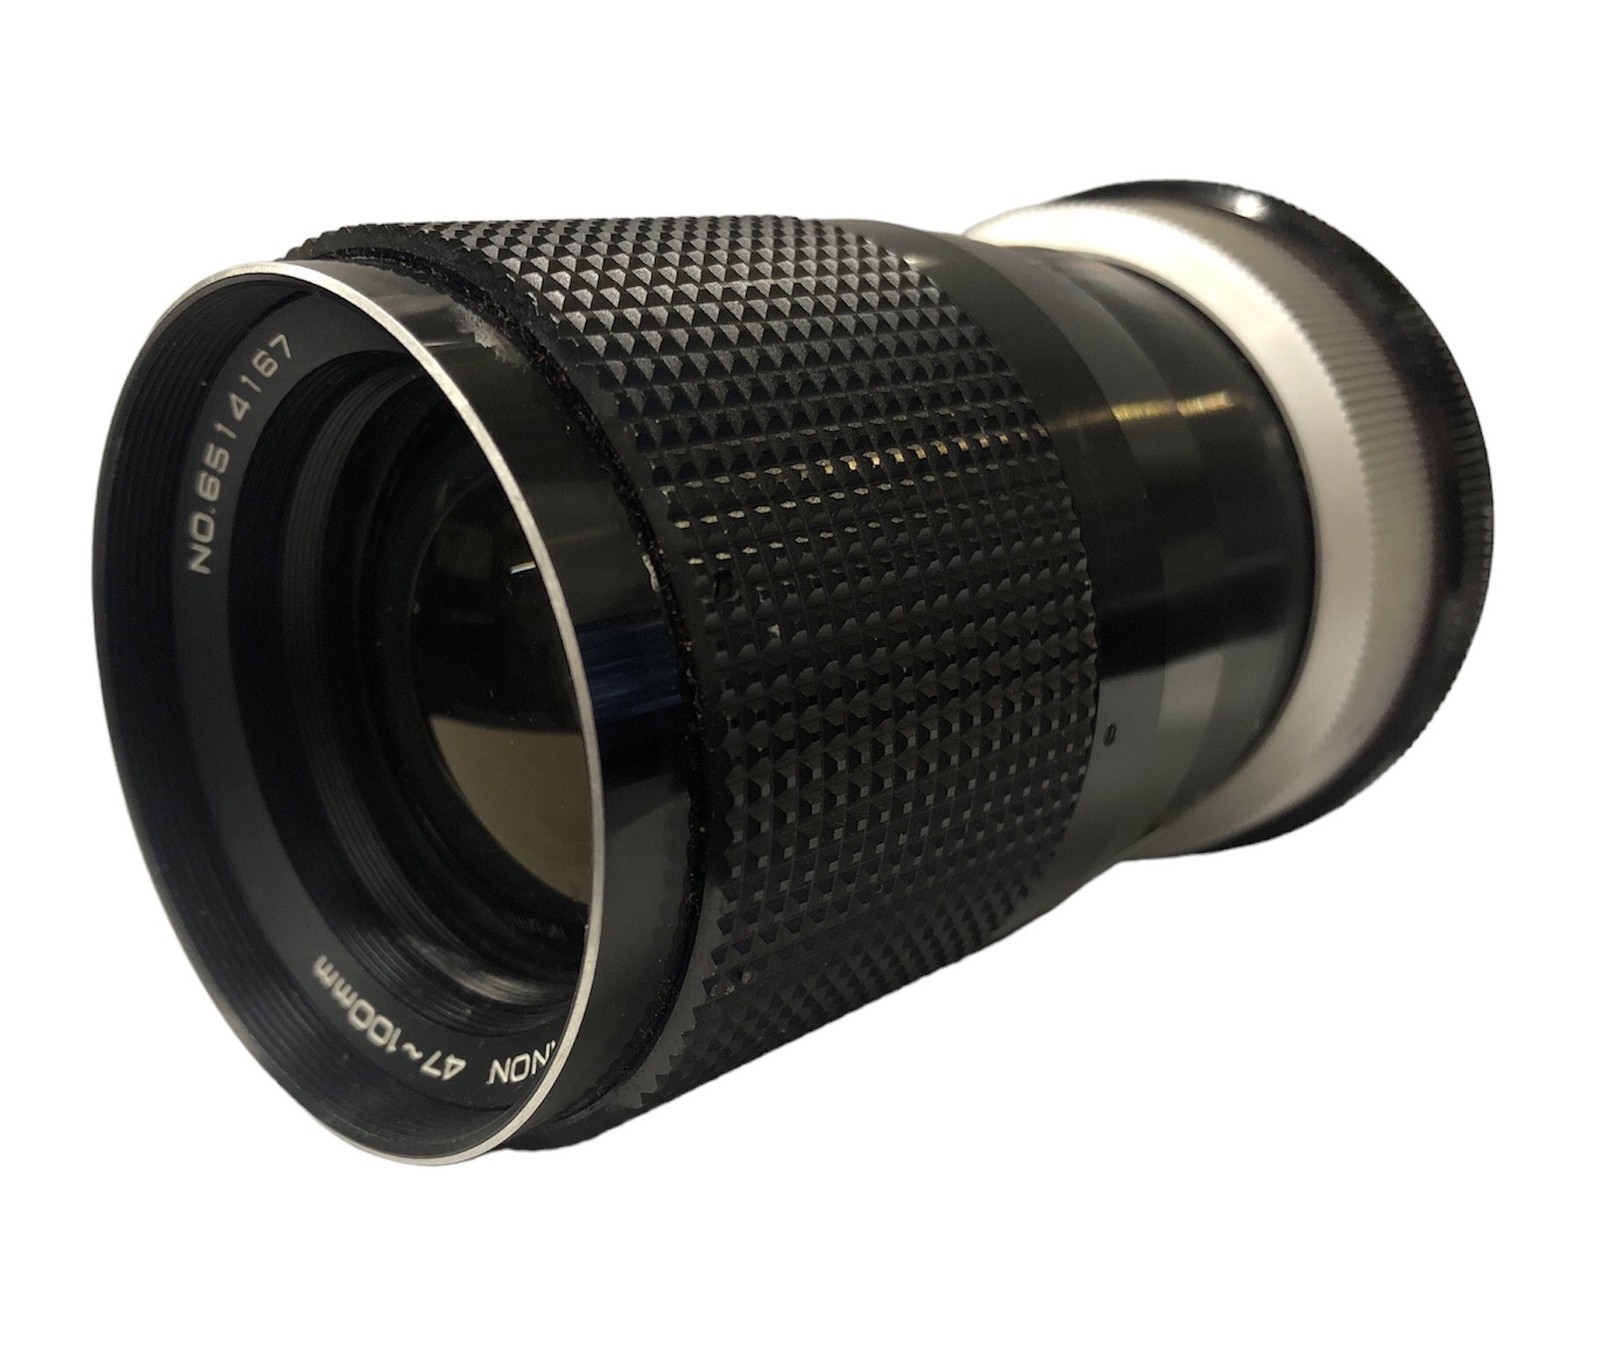 Konica Lens Hexanon 360008 - $199.00